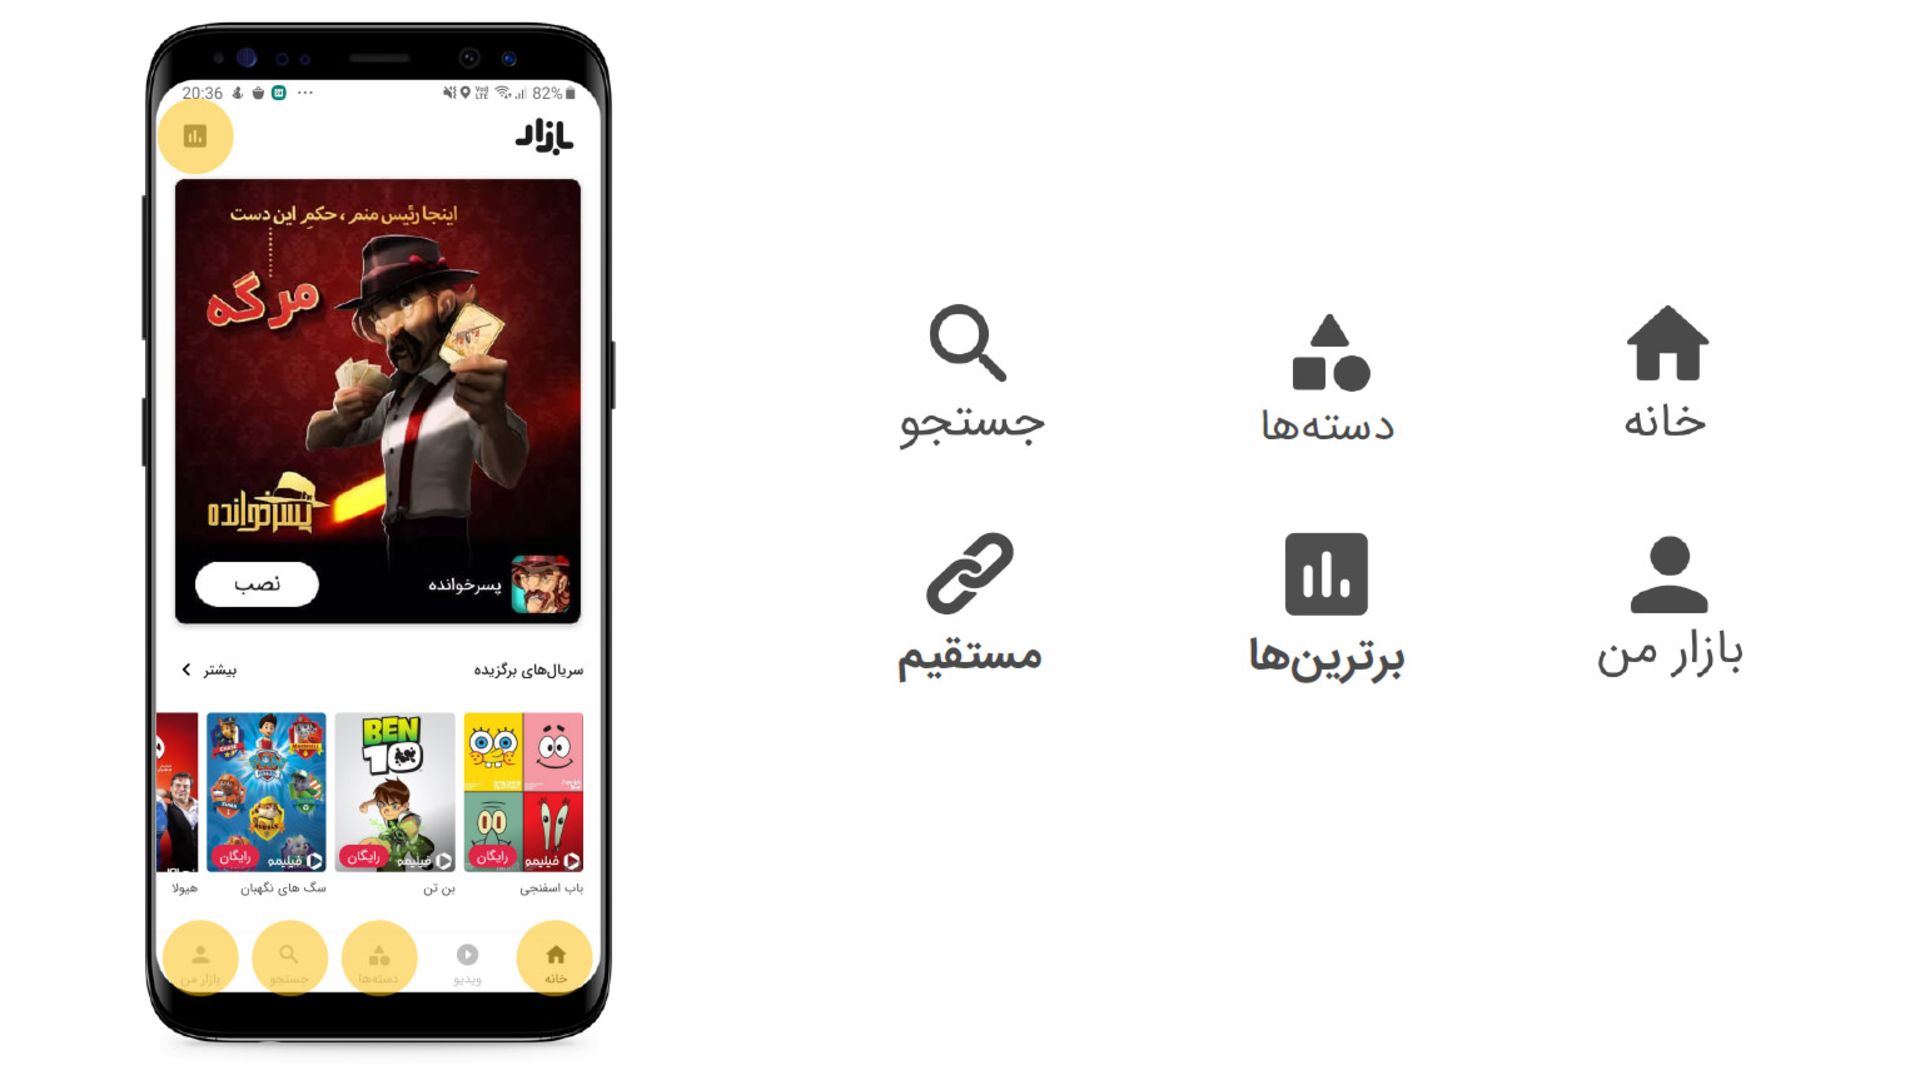 کانال های اصلی دانلود و نصب اپلیکیشن از کافه بازار / cafebazaar main app download channels